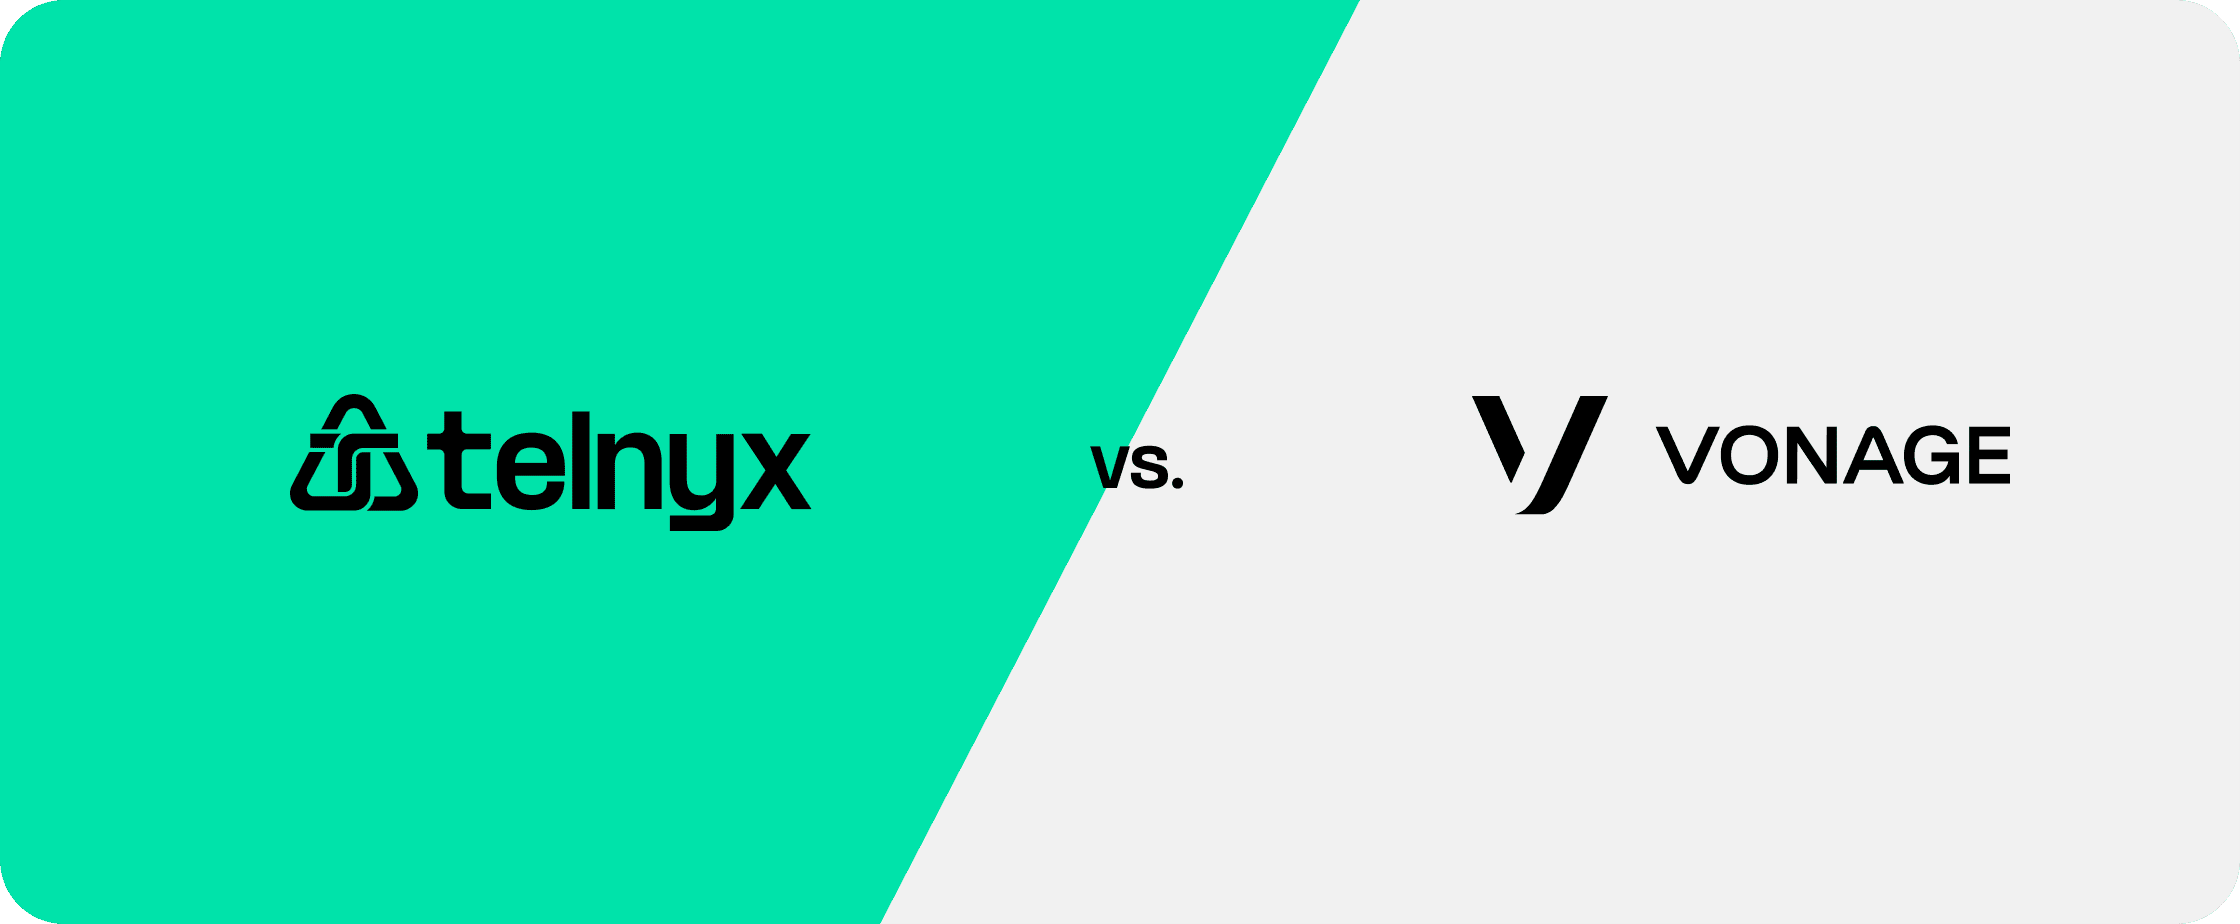 Telnyx logo vs. Vonage logo on white and green background